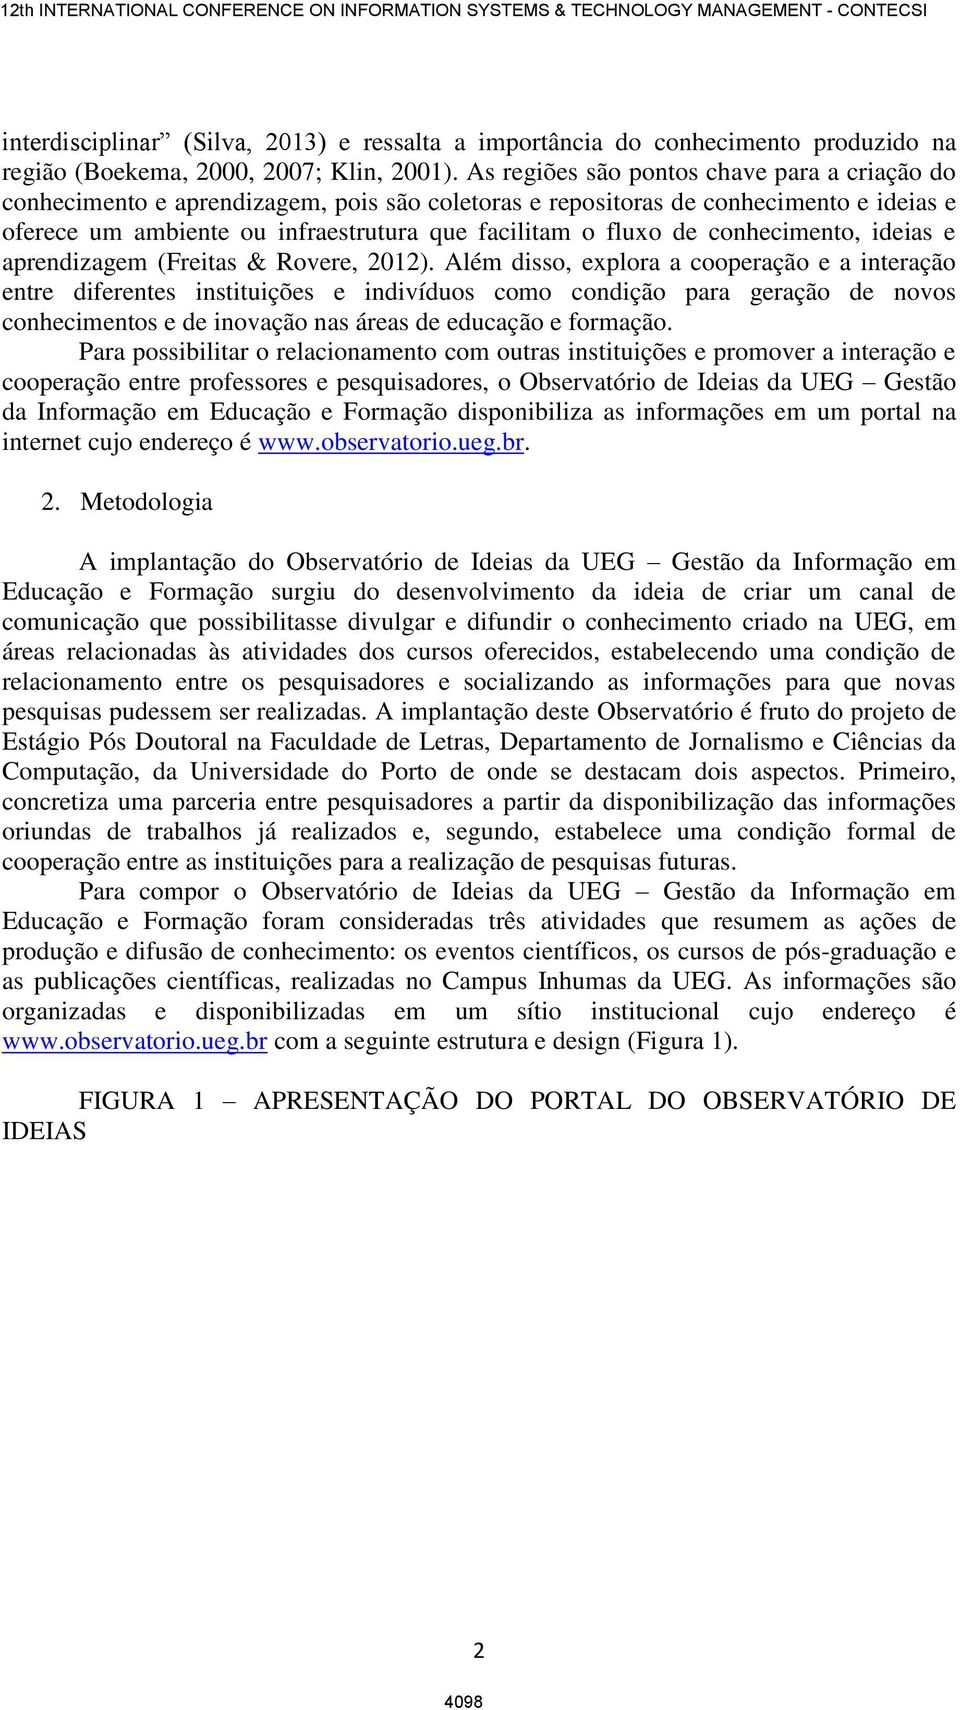 conhecimento, ideias e aprendizagem (Freitas & Rovere, 2012).